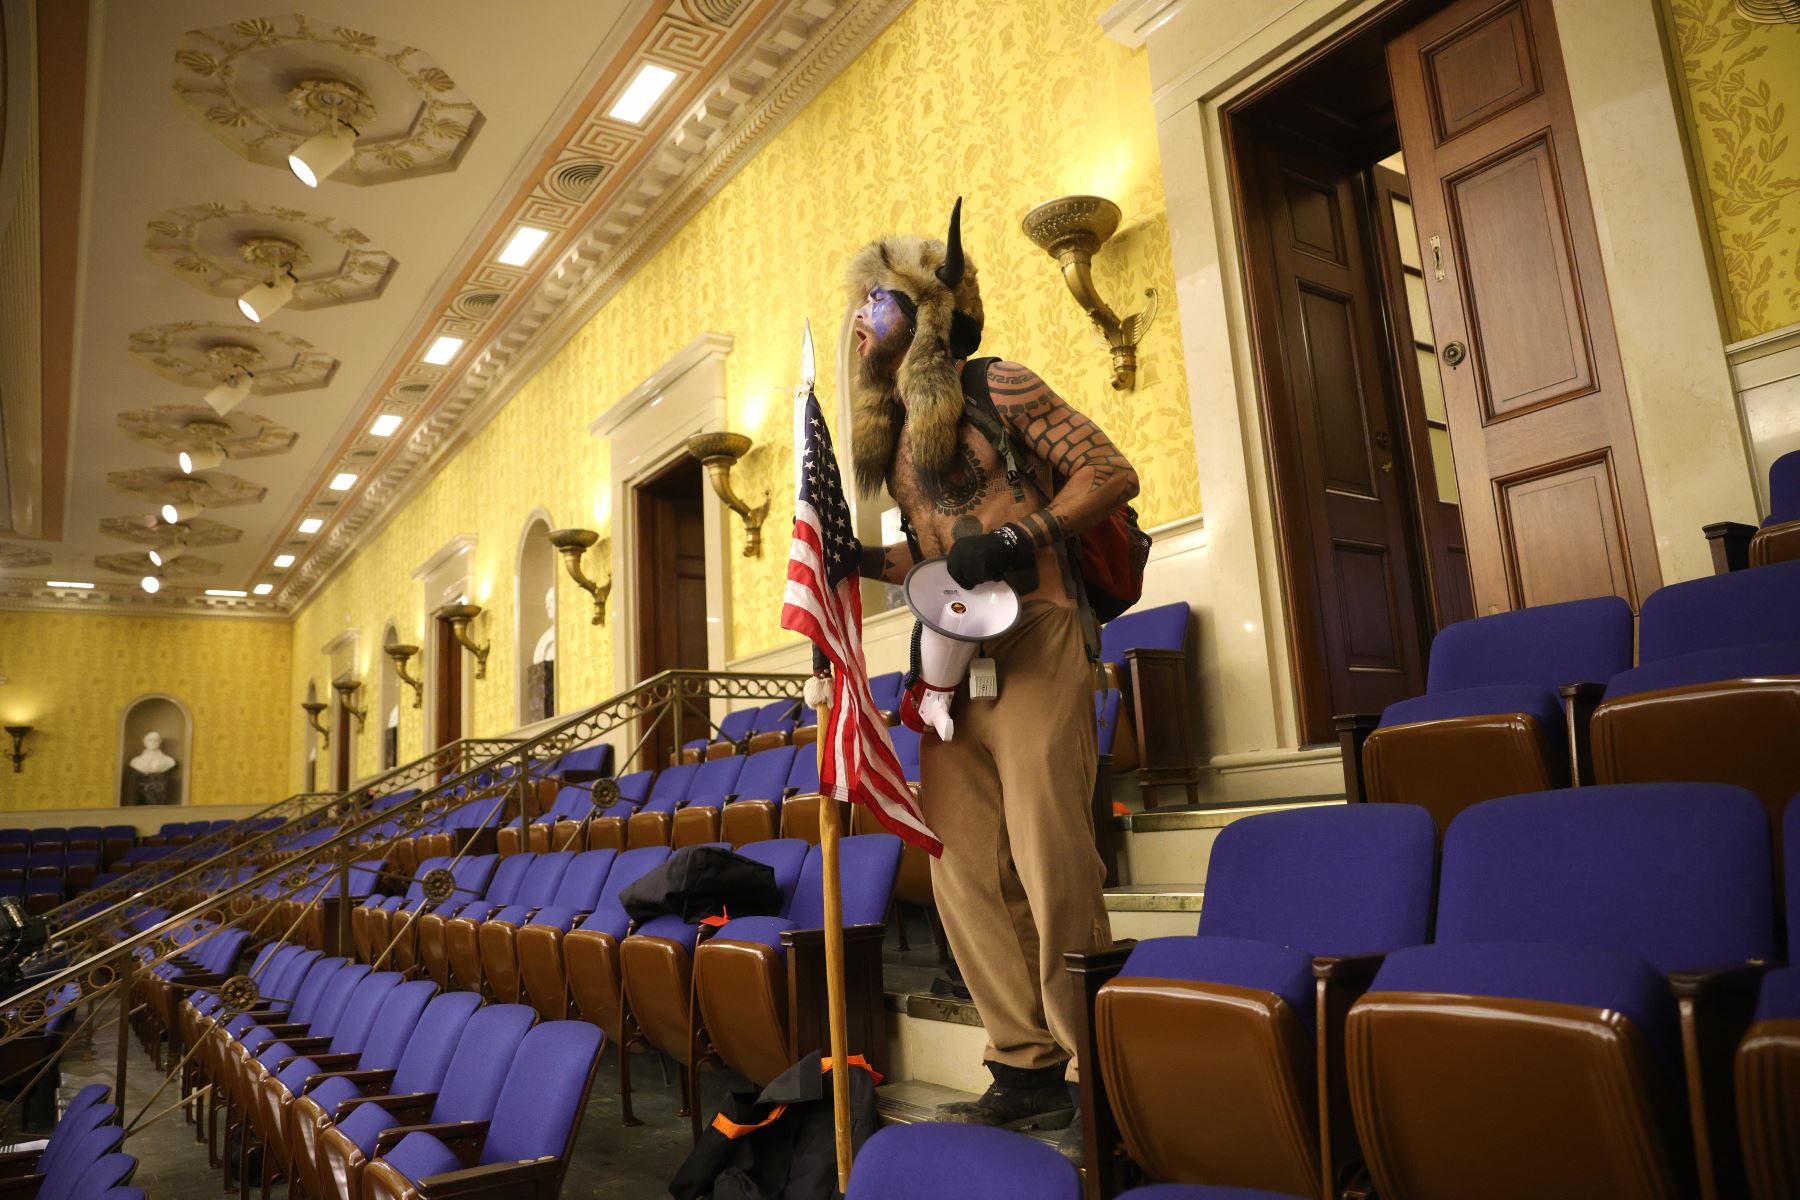 Un manifestante grita "Libertad" dentro de la cámara del Senado después de que el Capitolio fuera interrumpido por una turba durante una sesión conjunta del Congreso en Washington DC. Foto: AFP